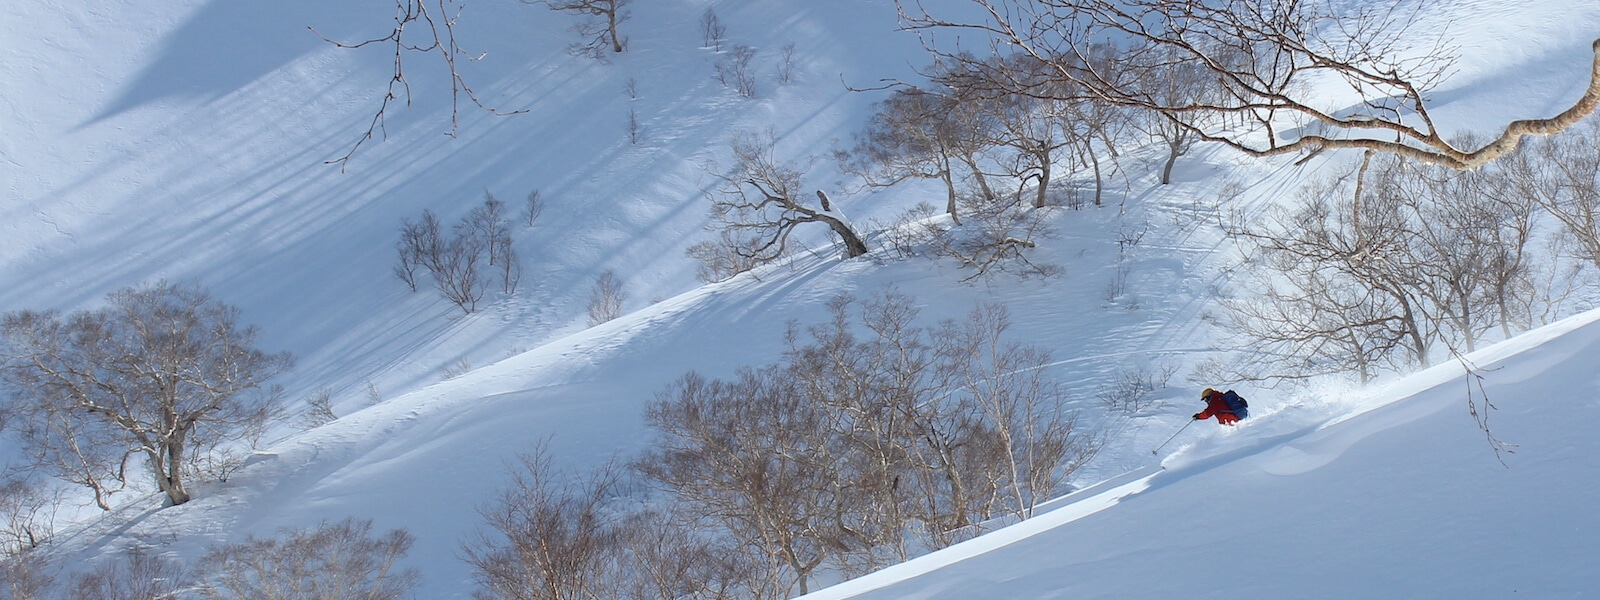 hakuba myoko backcountry skiing tour in Japan